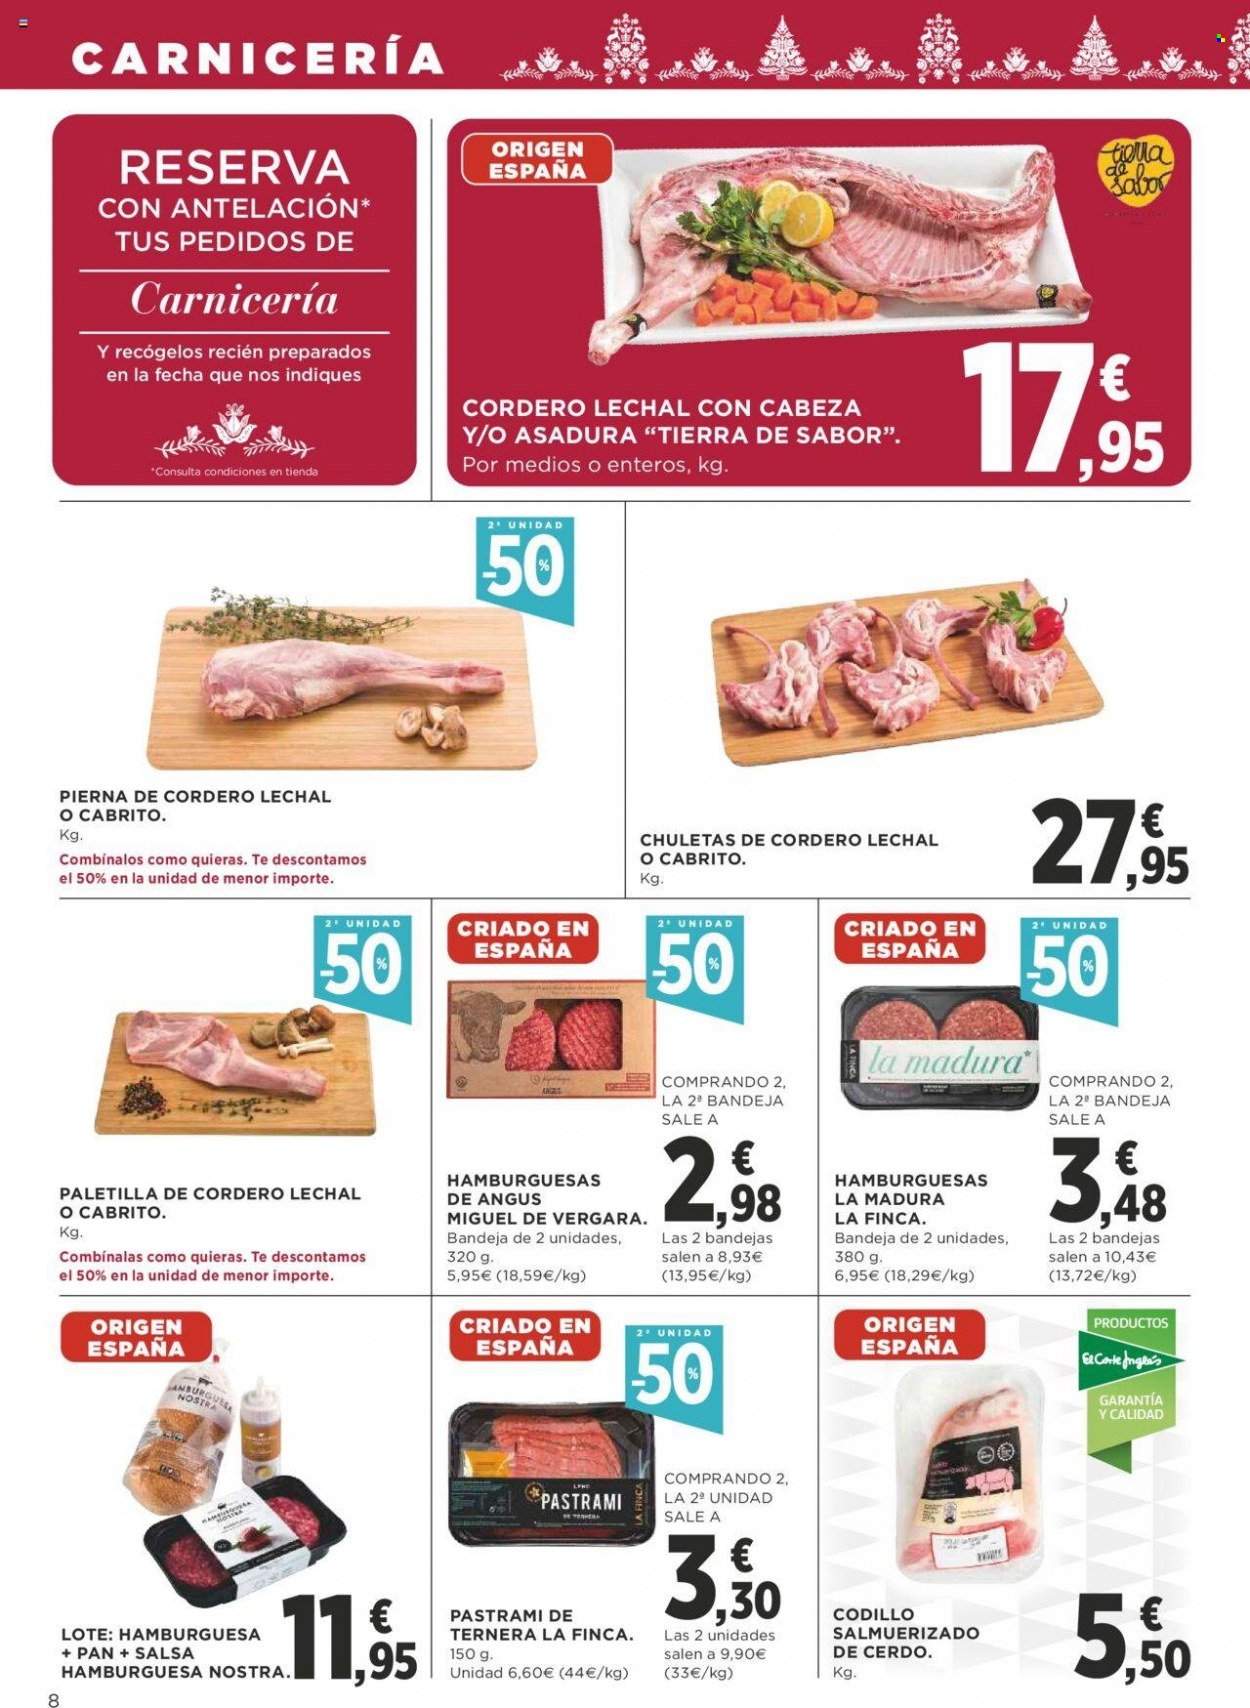 thumbnail - Folleto actual Supercor supermercados - 01/12/22 - 14/12/22 - Ventas - angus, carne picada, cordero lechal, pastrami. Página 8.